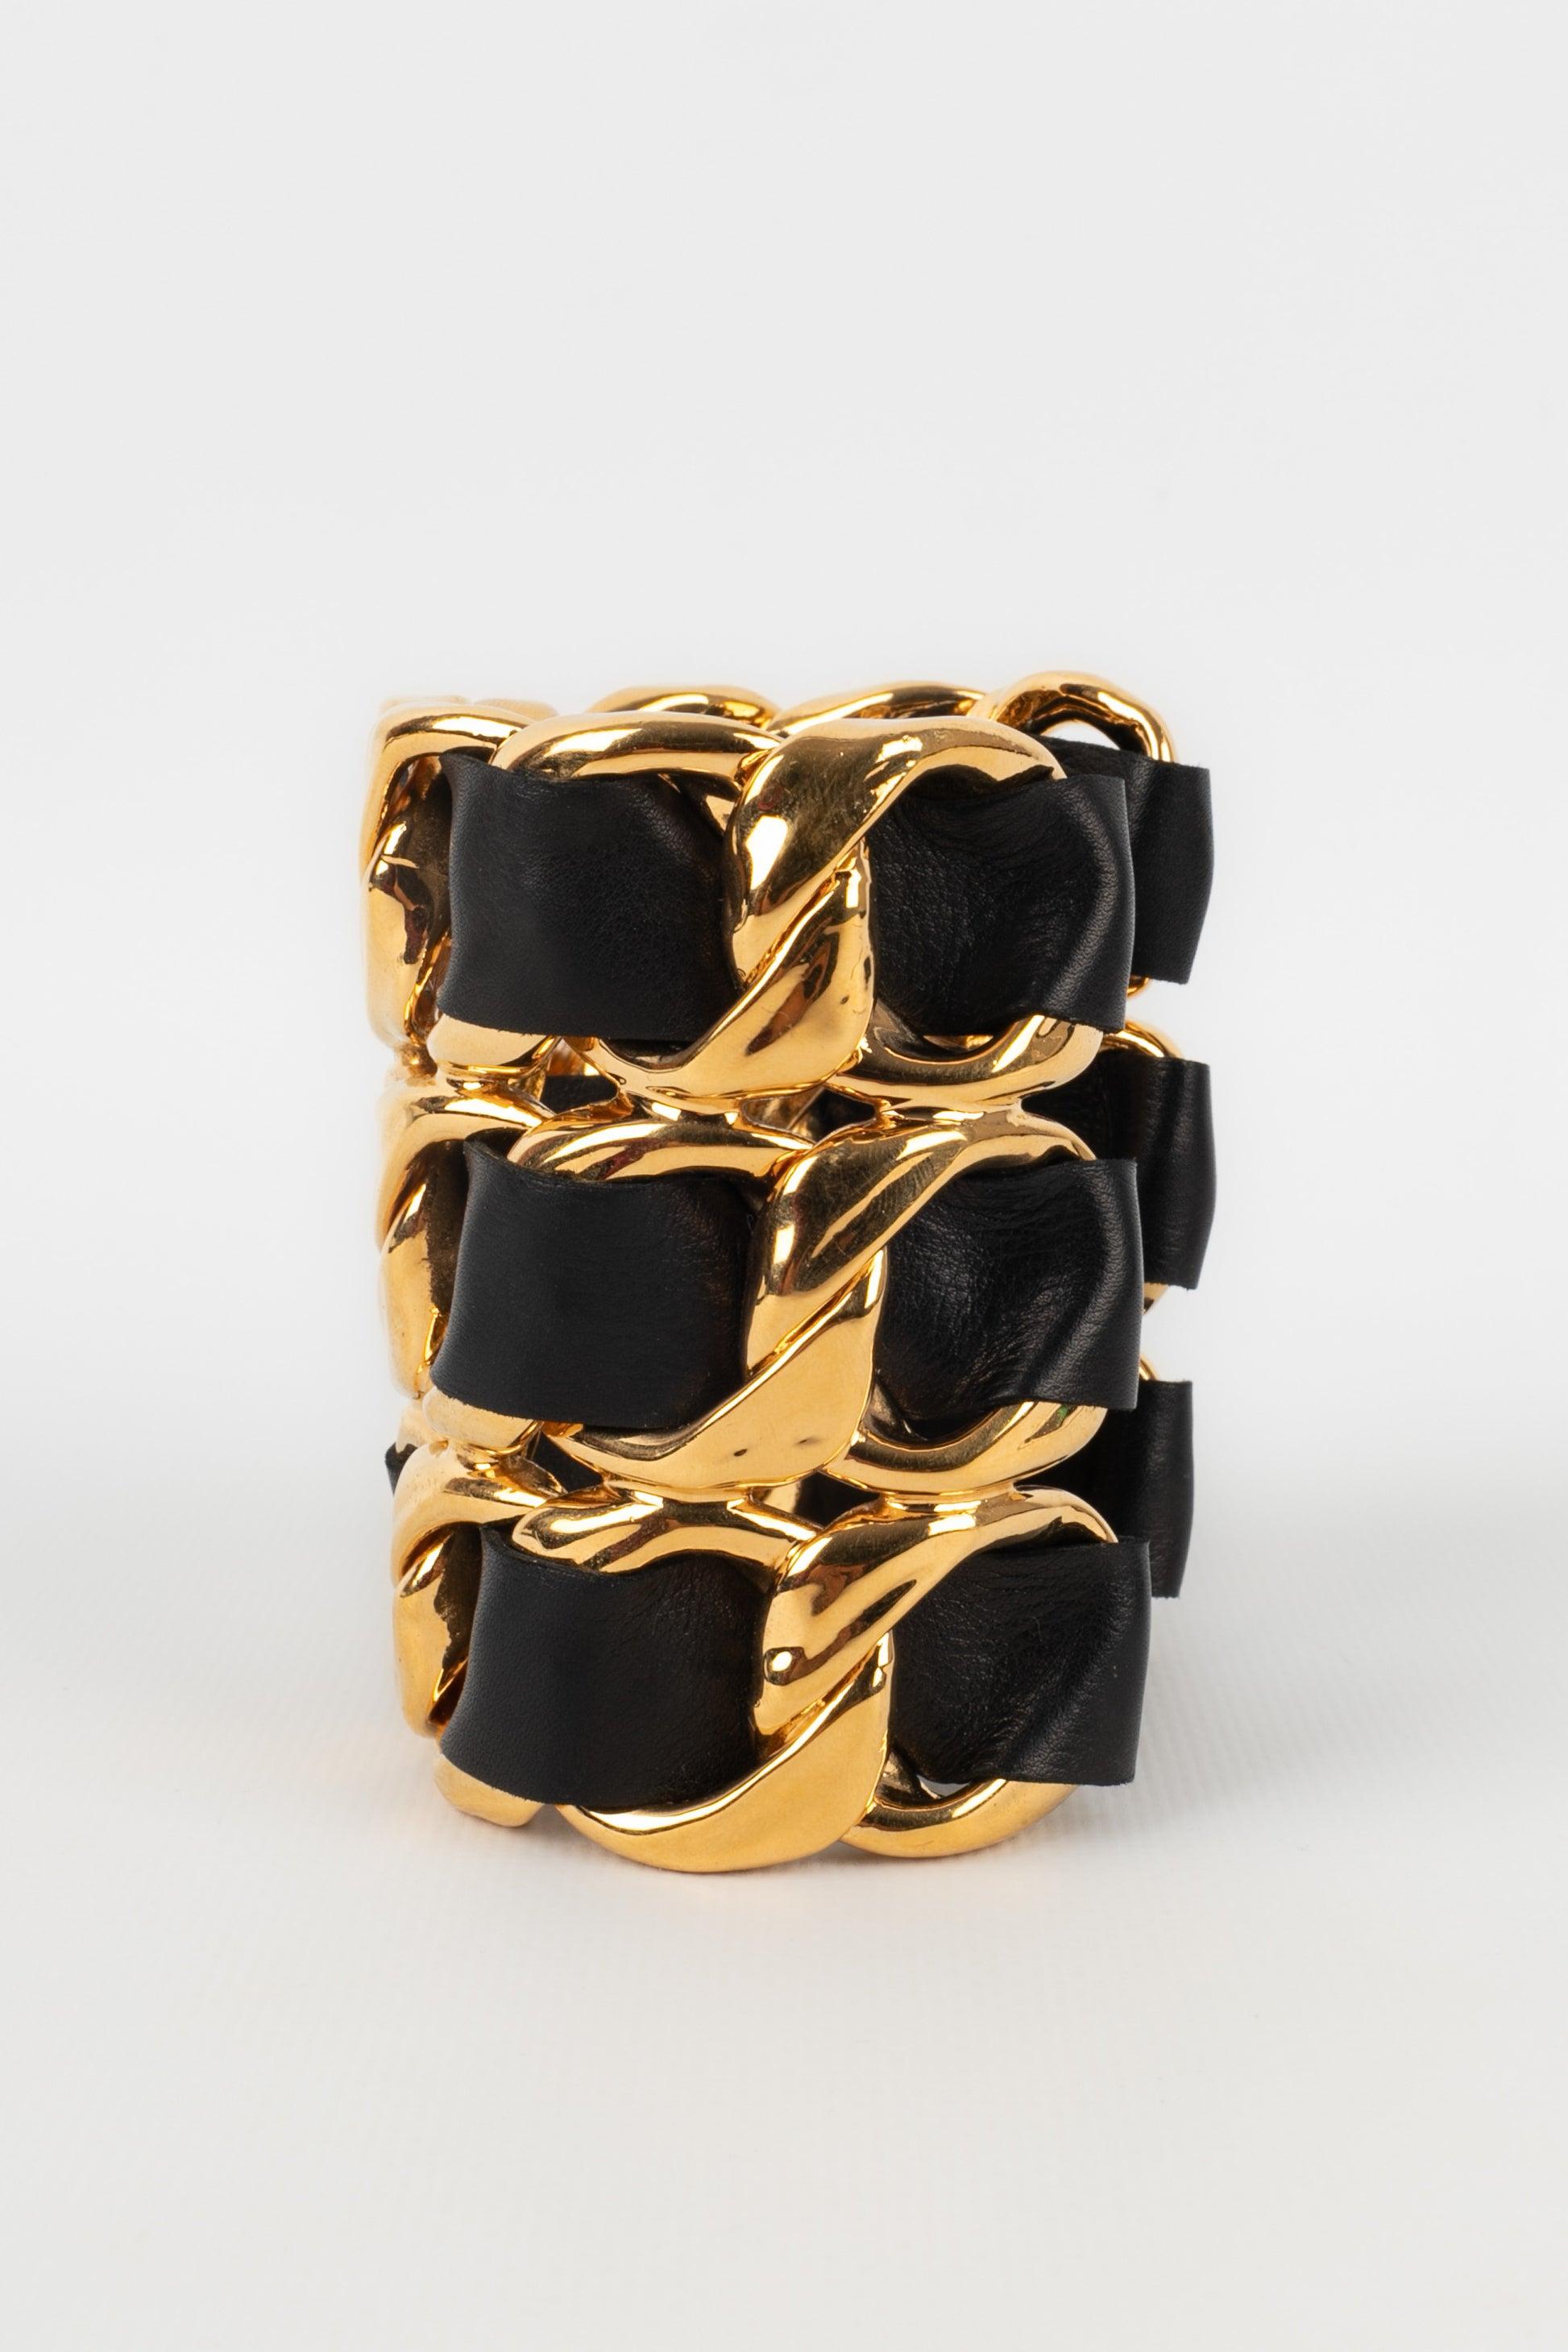 Chanel - (Made in France) Goldenes Metallmanschettenarmband mit schwarzem Leder. 2cc3 Collection'S - aus dem Ende der 1980er Jahre.

Zusätzliche Informationen:
Zustand: Sehr guter Zustand
Abmessungen: Umfang des Handgelenks: 14 cm - Öffnung: 3 cm -